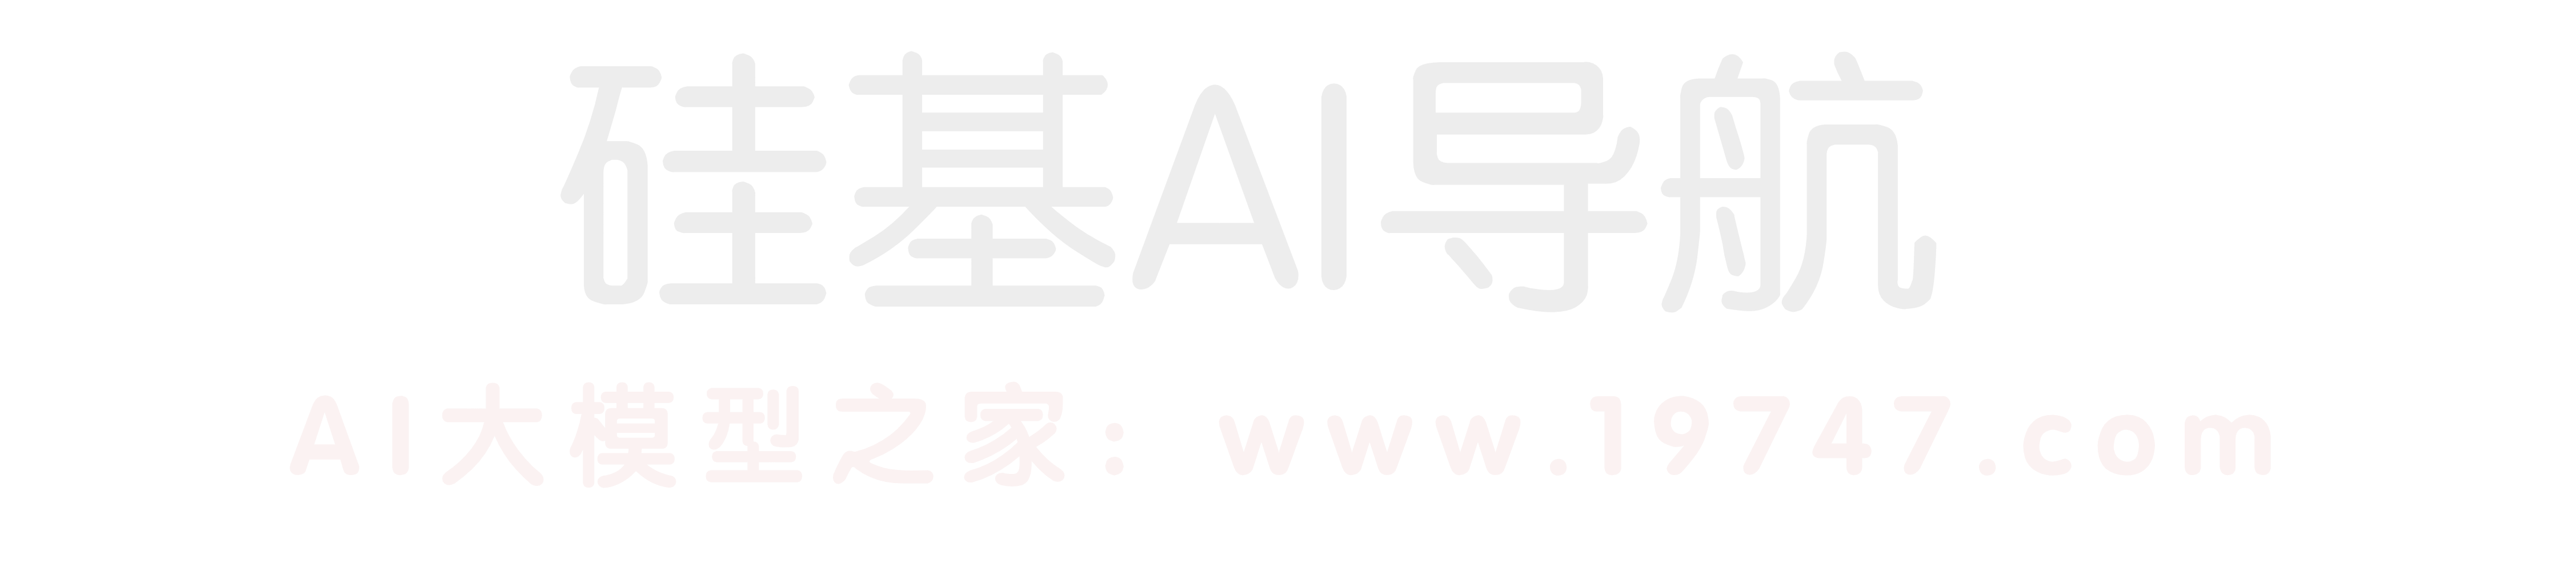 广州硅基技术开发有限公司硅基AI导航,AI工具导航大全,国内外AI工具箱网站,精选优质AI工具资源,一站式全搞定AI工具导航。